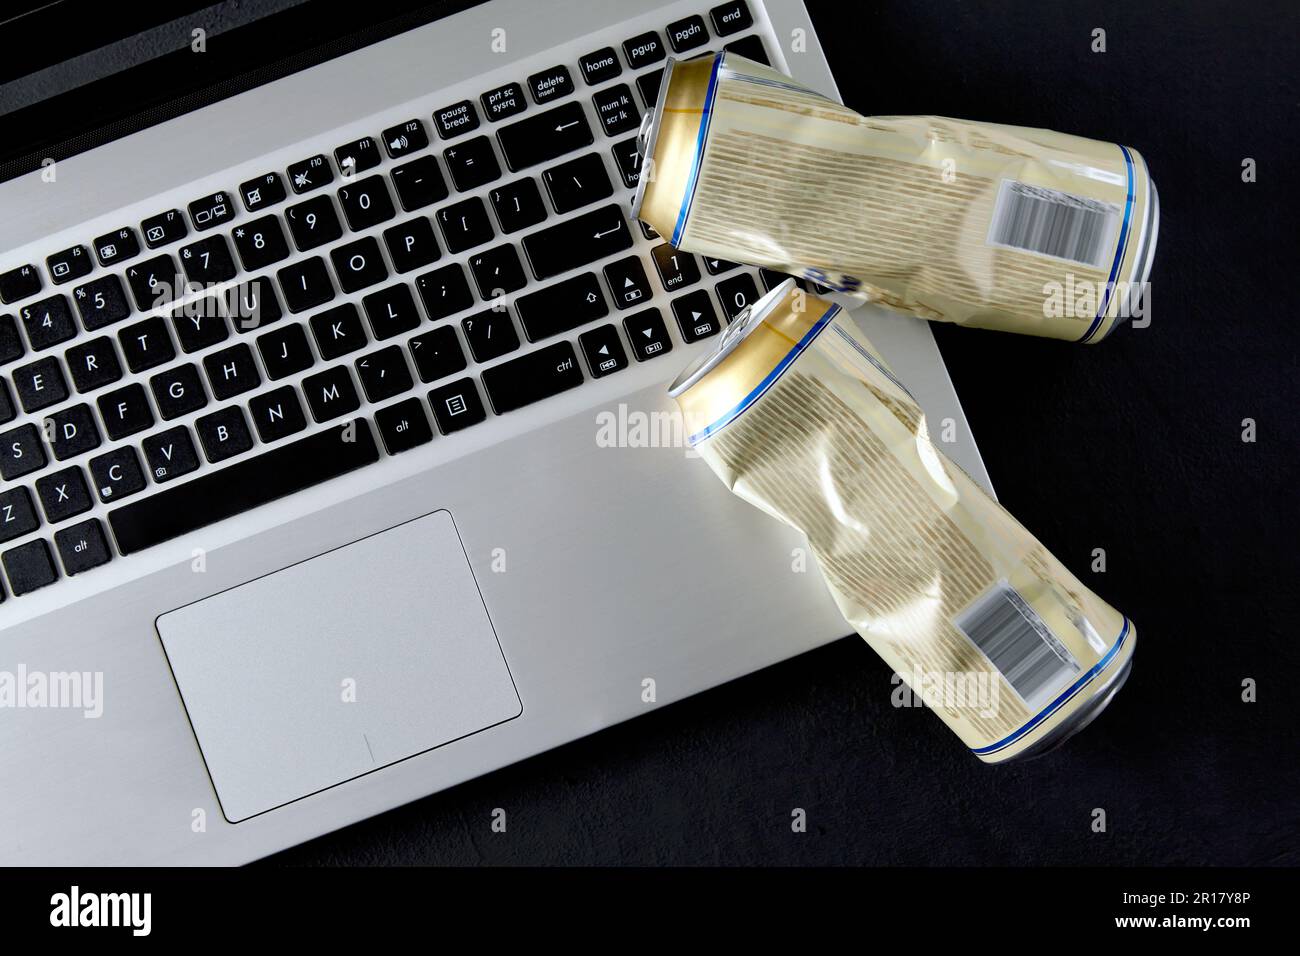 Vider les boîtes de bière écrasées sur un clavier d'ordinateur portable sur fond noir. Des combats en contrebas sur les médias sociaux. Vue de dessus avec espace de copie Banque D'Images